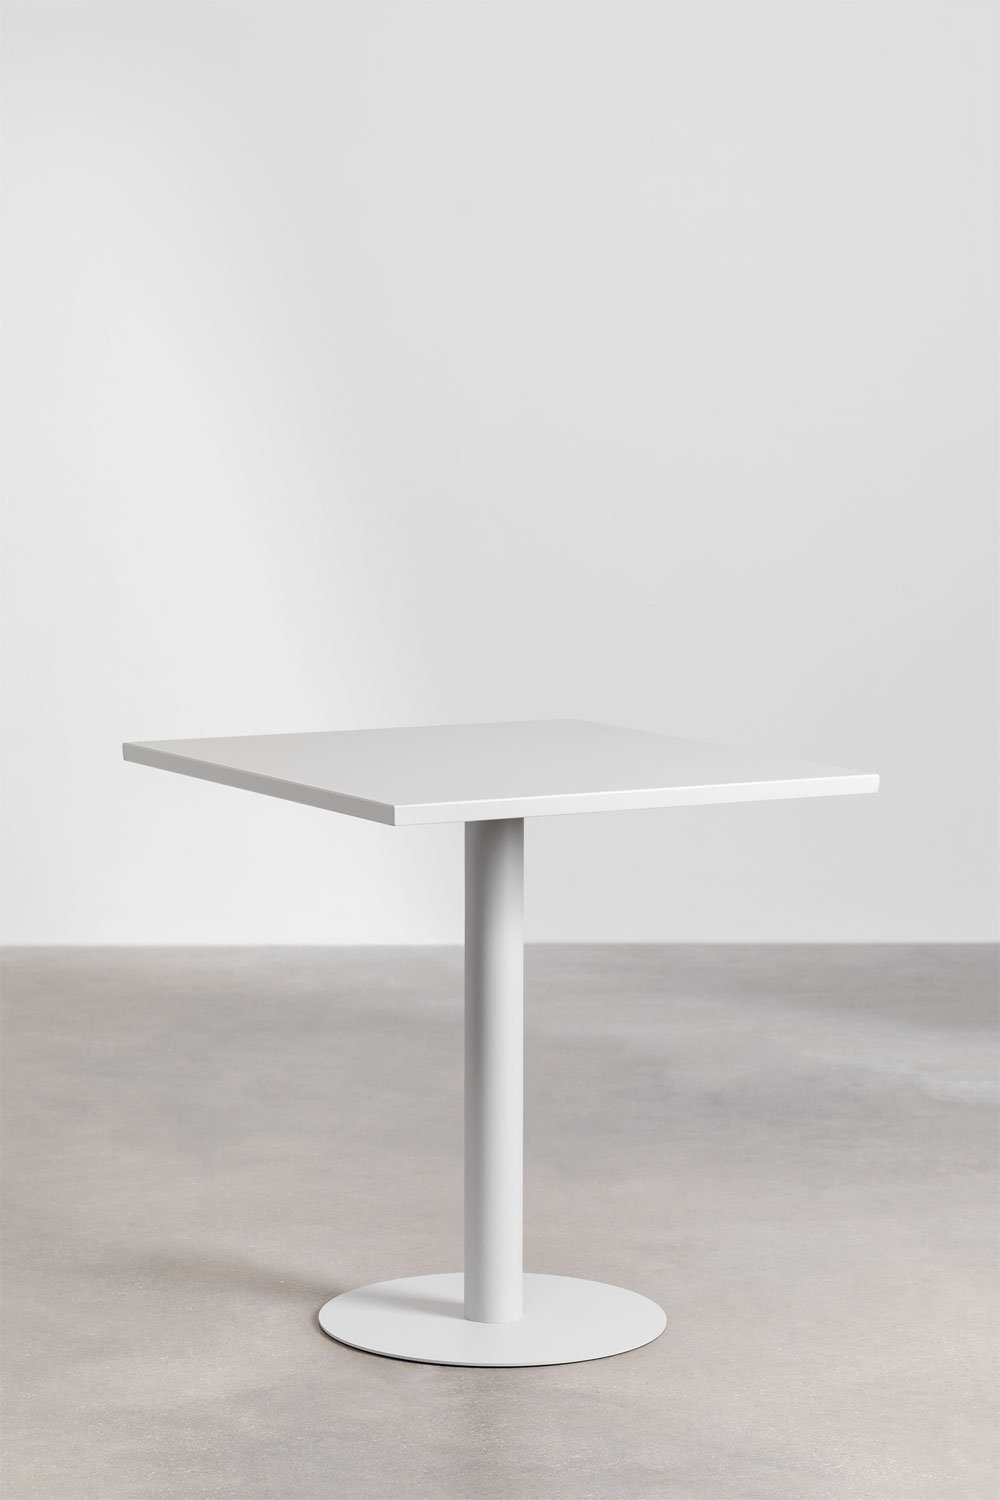 Kwadratowy metalowy stół do jadalni (70x70 cm) Mizzi, obrazek w galerii 1